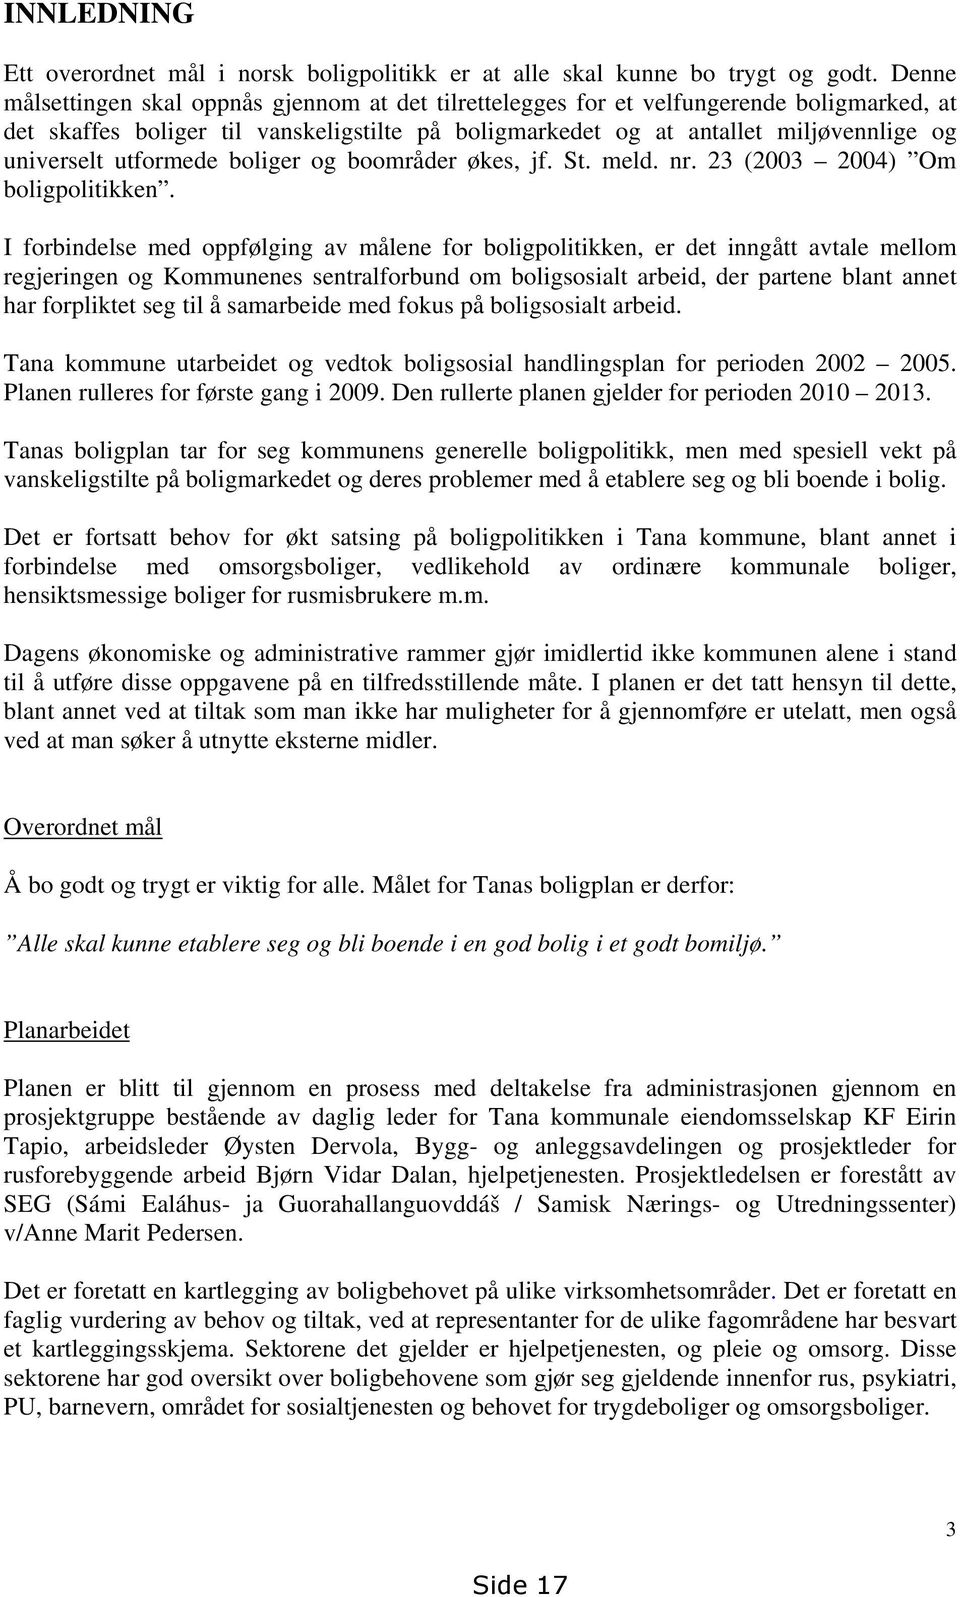 utformede boliger og boområder økes, jf. St. meld. nr. 23 (2003 2004) Om boligpolitikken.